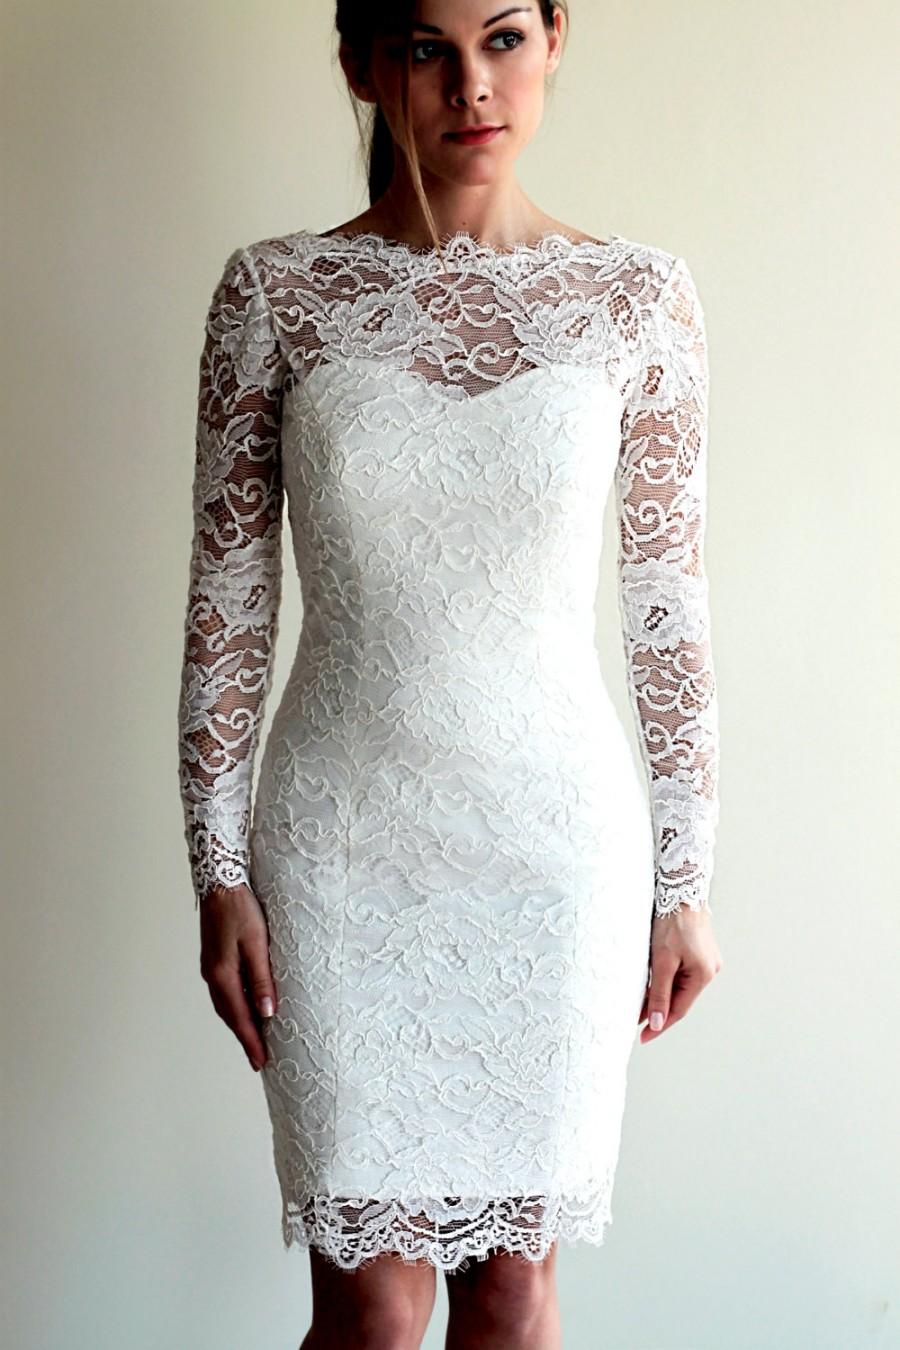 زفاف - Short Wedding Dress with Sleeves and Illusion Neckline and Illusion Back, Reception Lace Dress, See-through Lace Dress